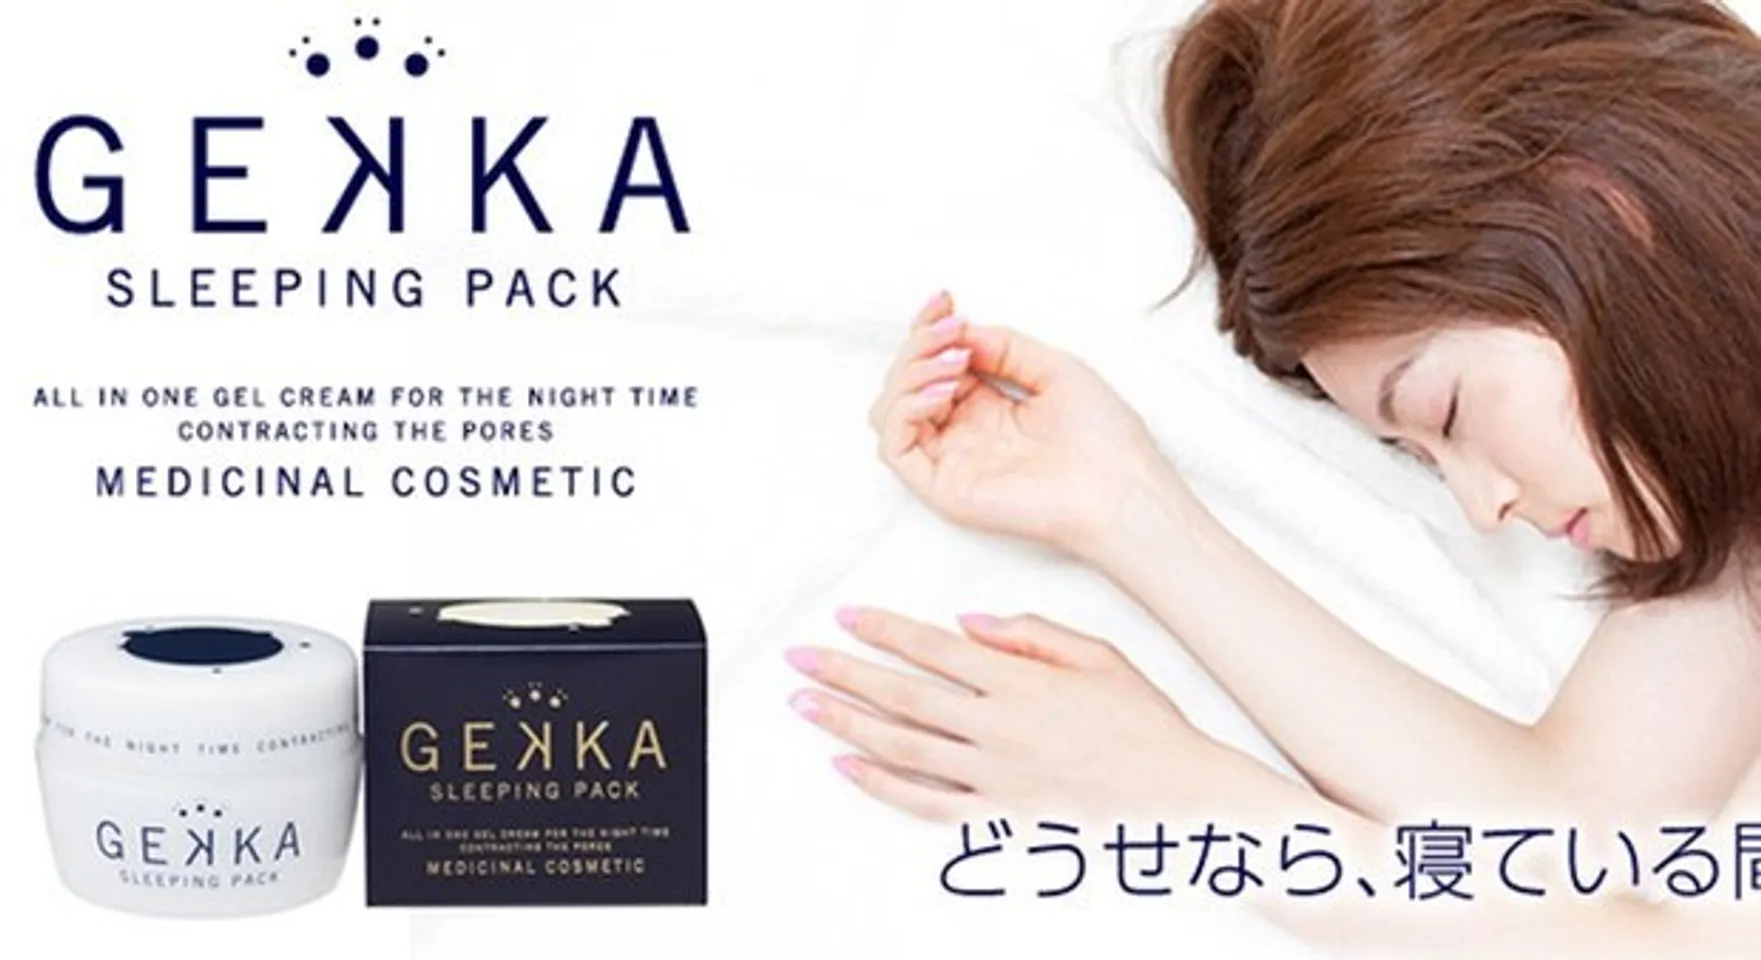 Mặt nạ ngủ Gekka Sleeping Pack cung cấp độ ẩm cho da trong suốt 1 đêm dài